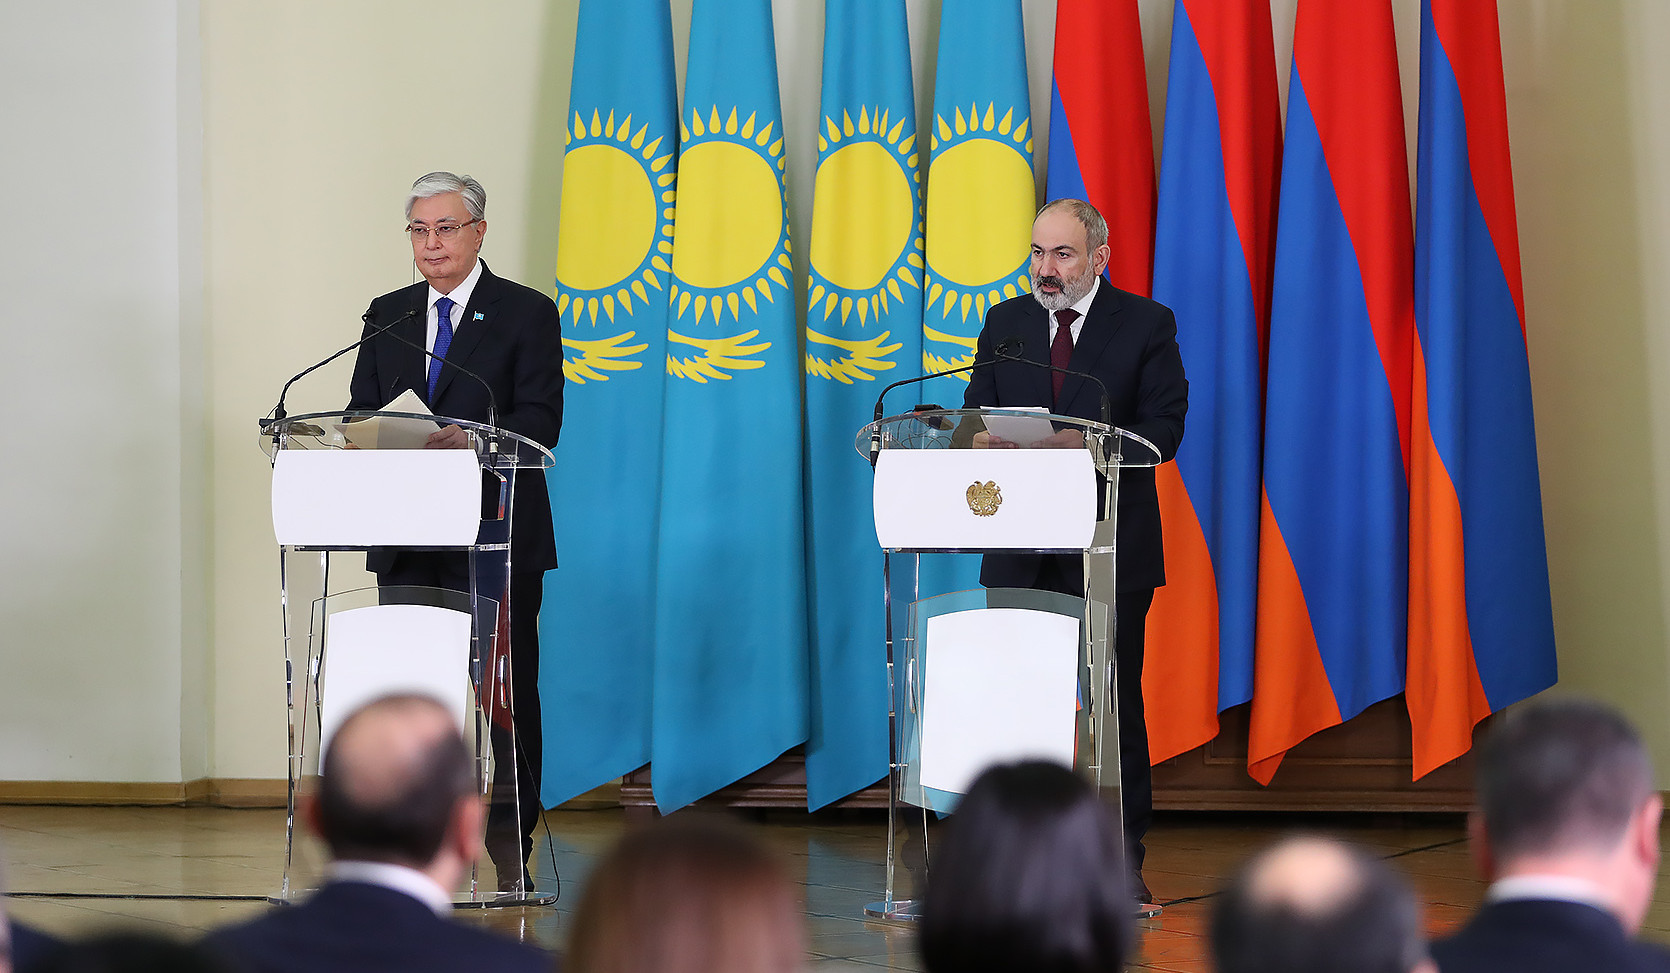 Ղազախստանը պատրաստ է Հայաստանի արտահանման ծավալը հասցնել 350 մլն դոլարի նշաձողին. Տոկաև